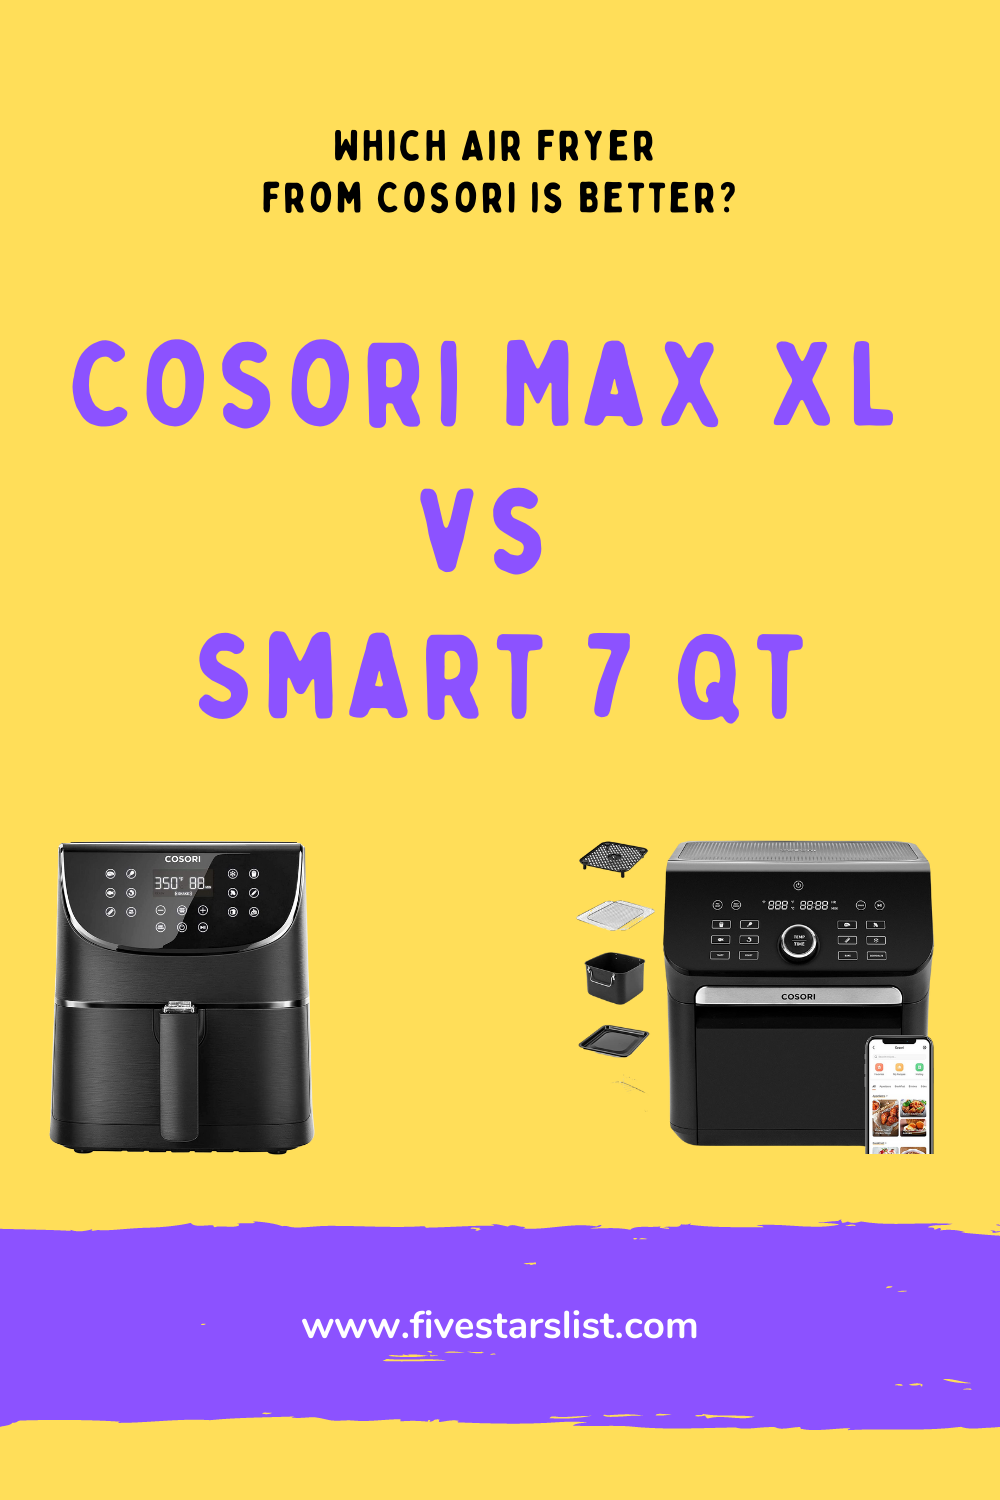 Cosori Max XL vs Smart 7 Qt